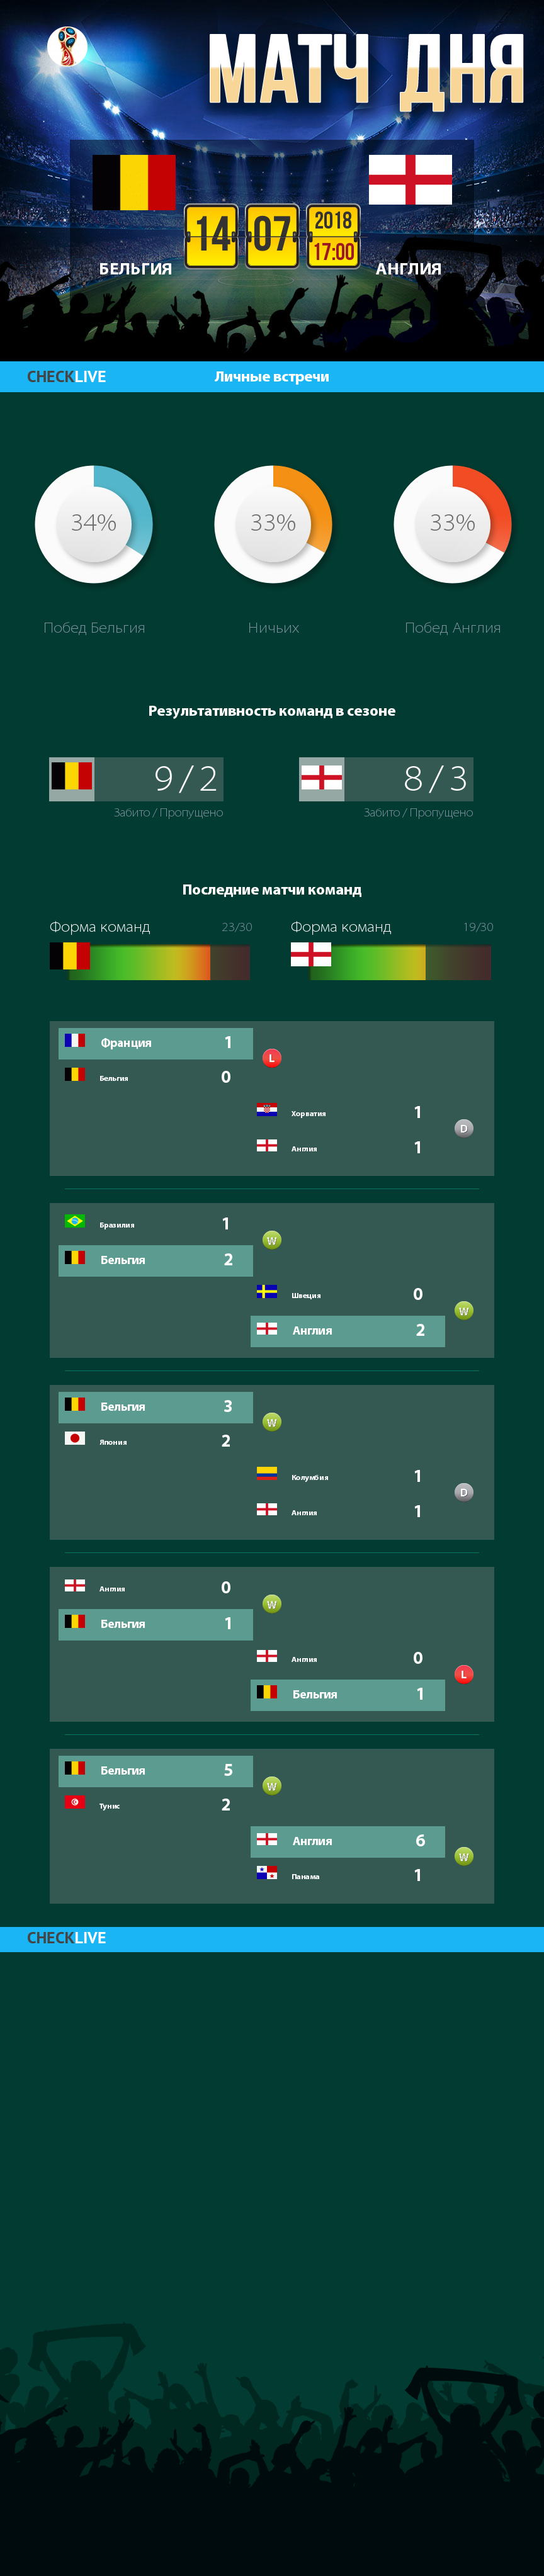 Инфографика Бельгия и Англия матч дня 14.07.2018